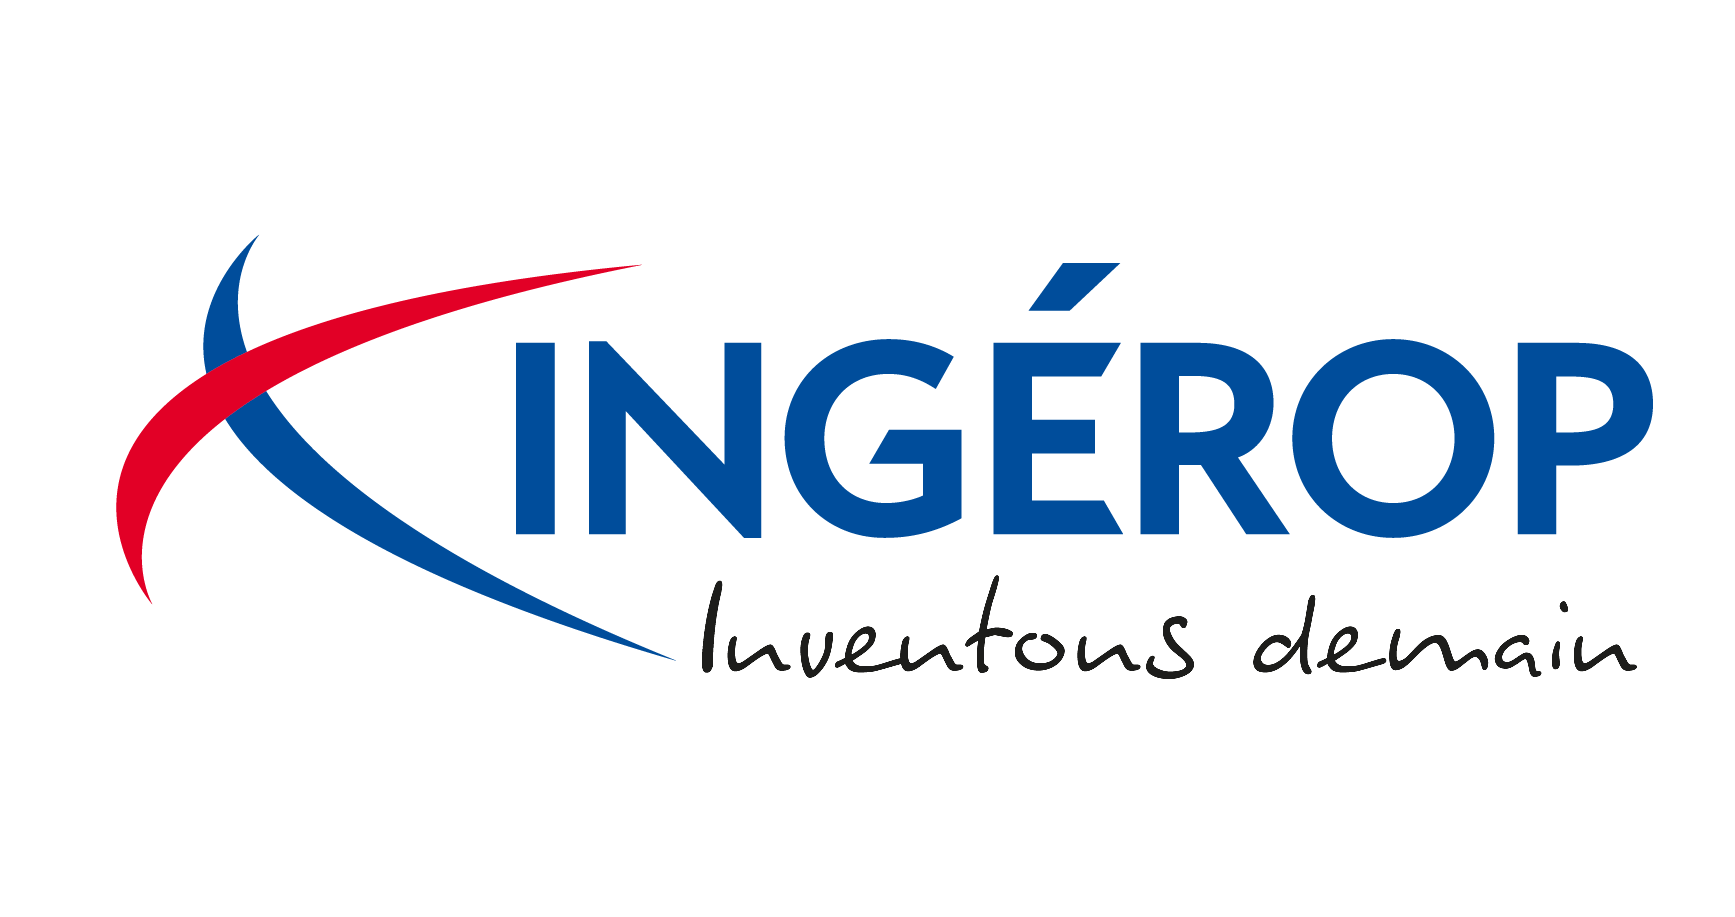 INGEROP - Inventons Demain